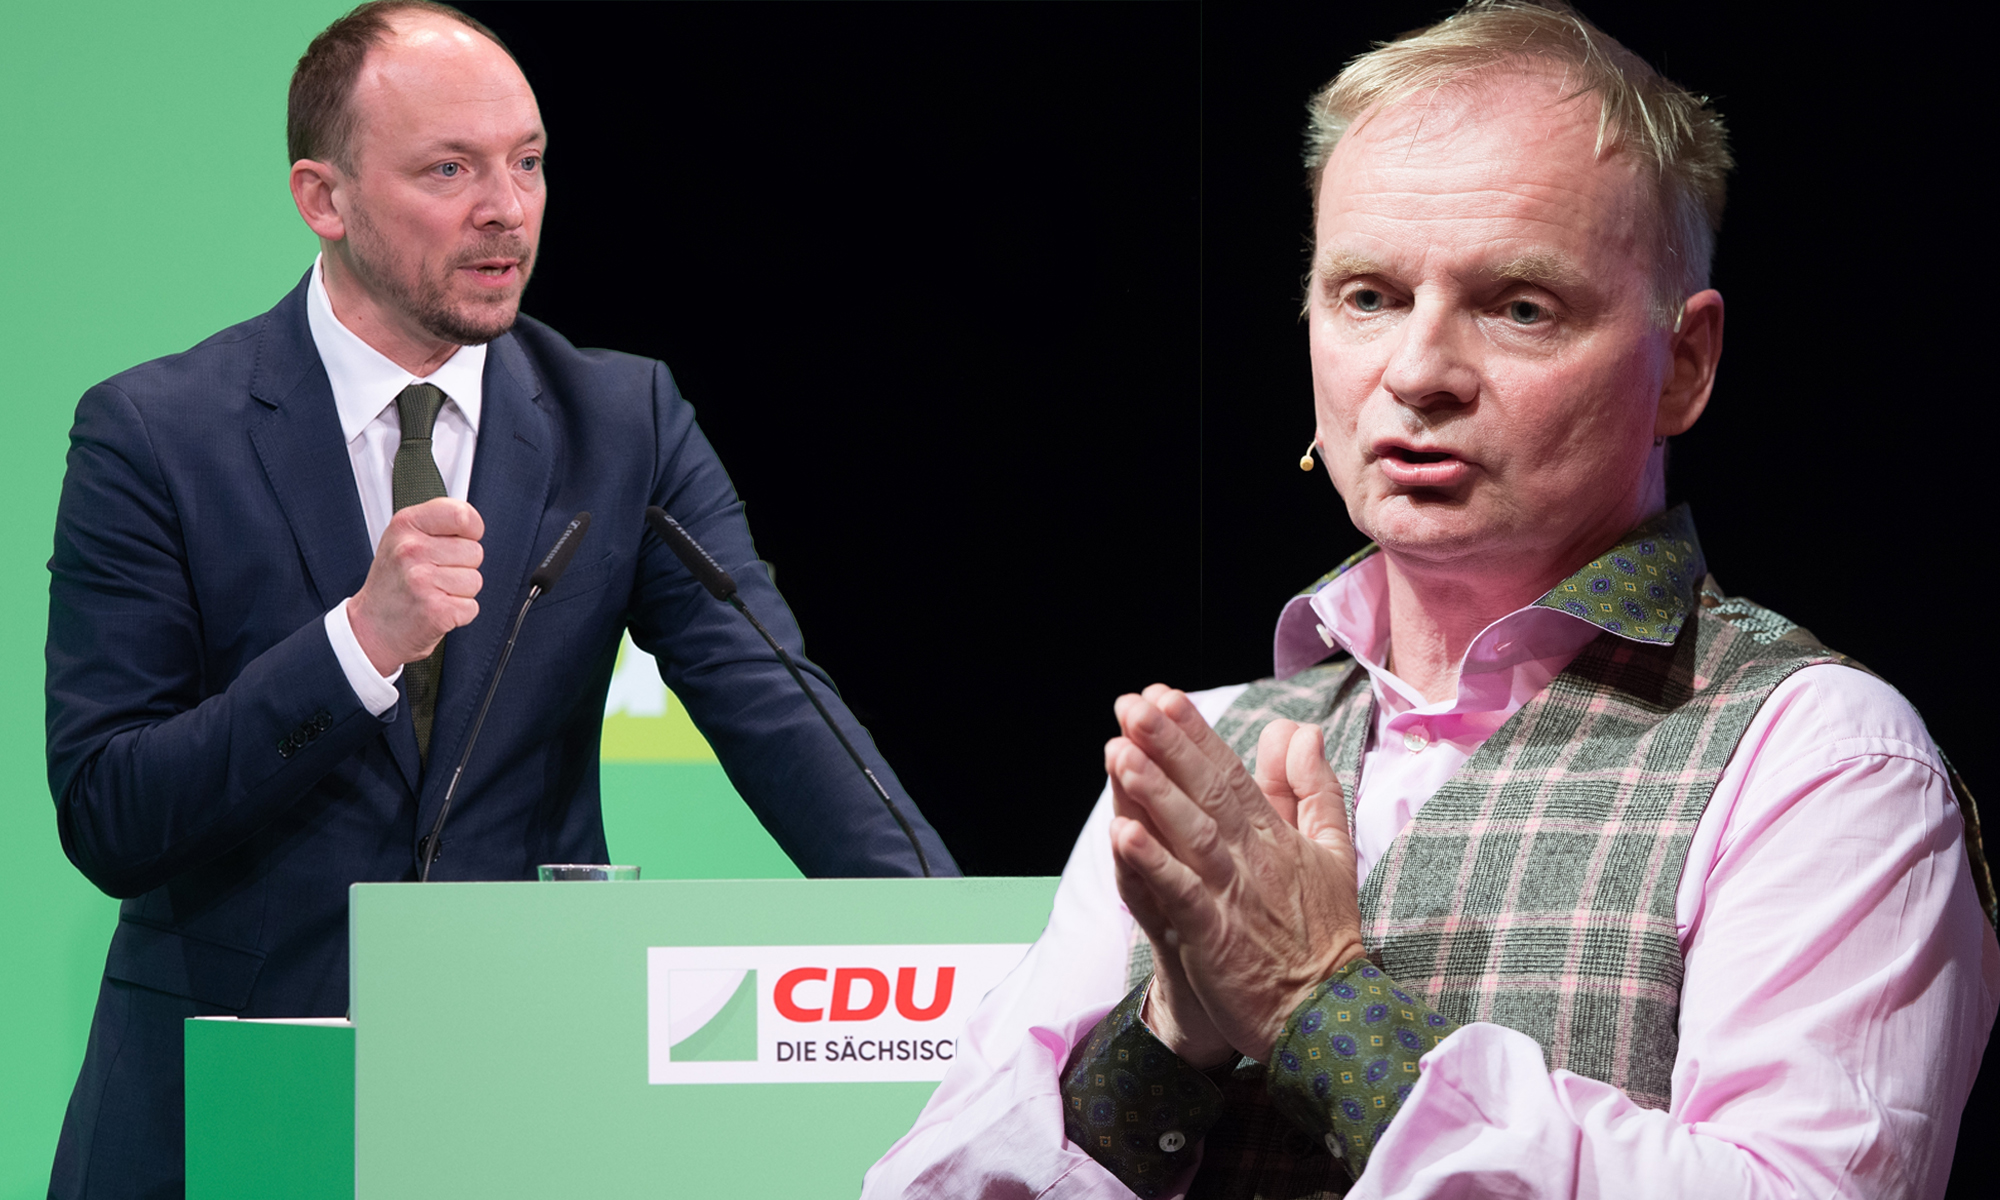 CDU-Politiker Marco Wanderwitz (l.) und Uwe Steimle